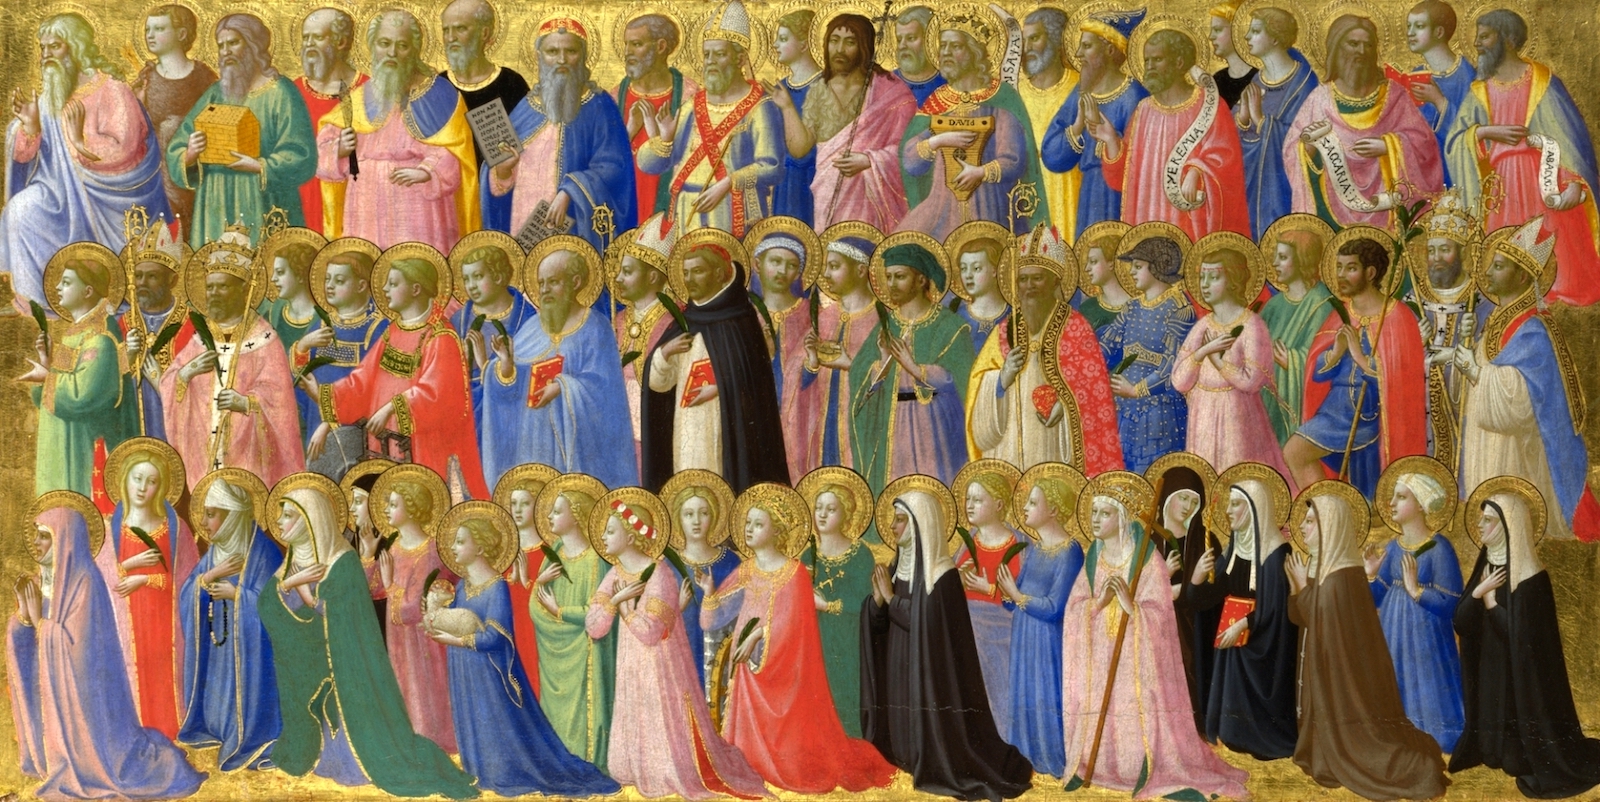 基督帶著聖者及烈士們作為先驅 by Fra Angelico - 大約1423-4年 - 31.9 x 63.5 公分 